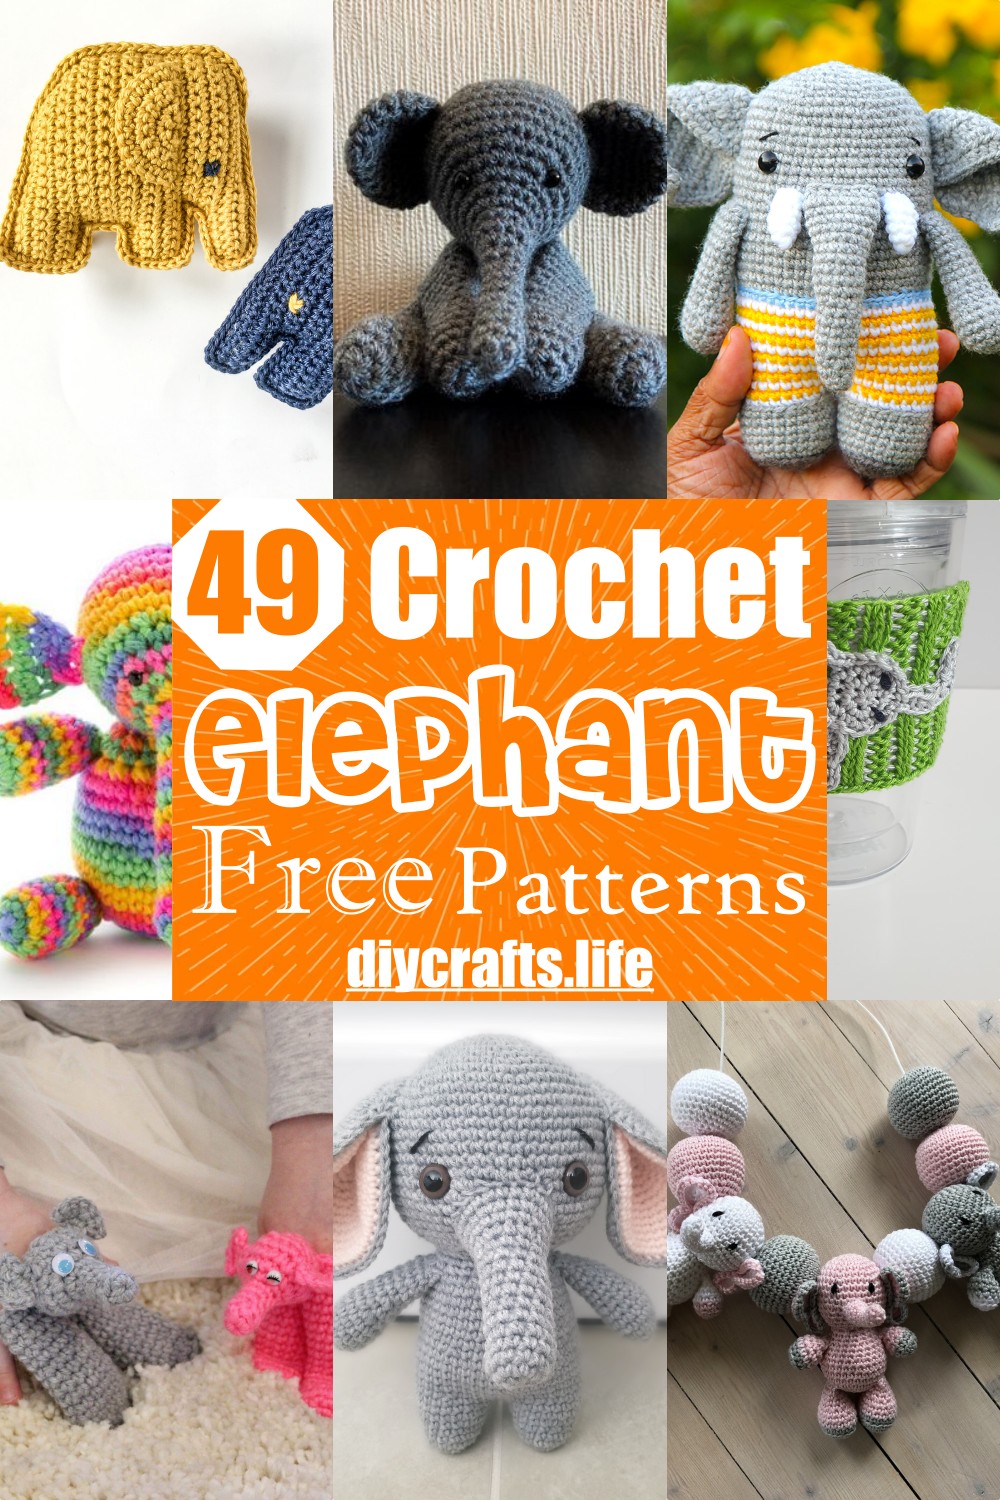 Crochet pattern Elephant / Amigurumi pattern / crochet eyes / big